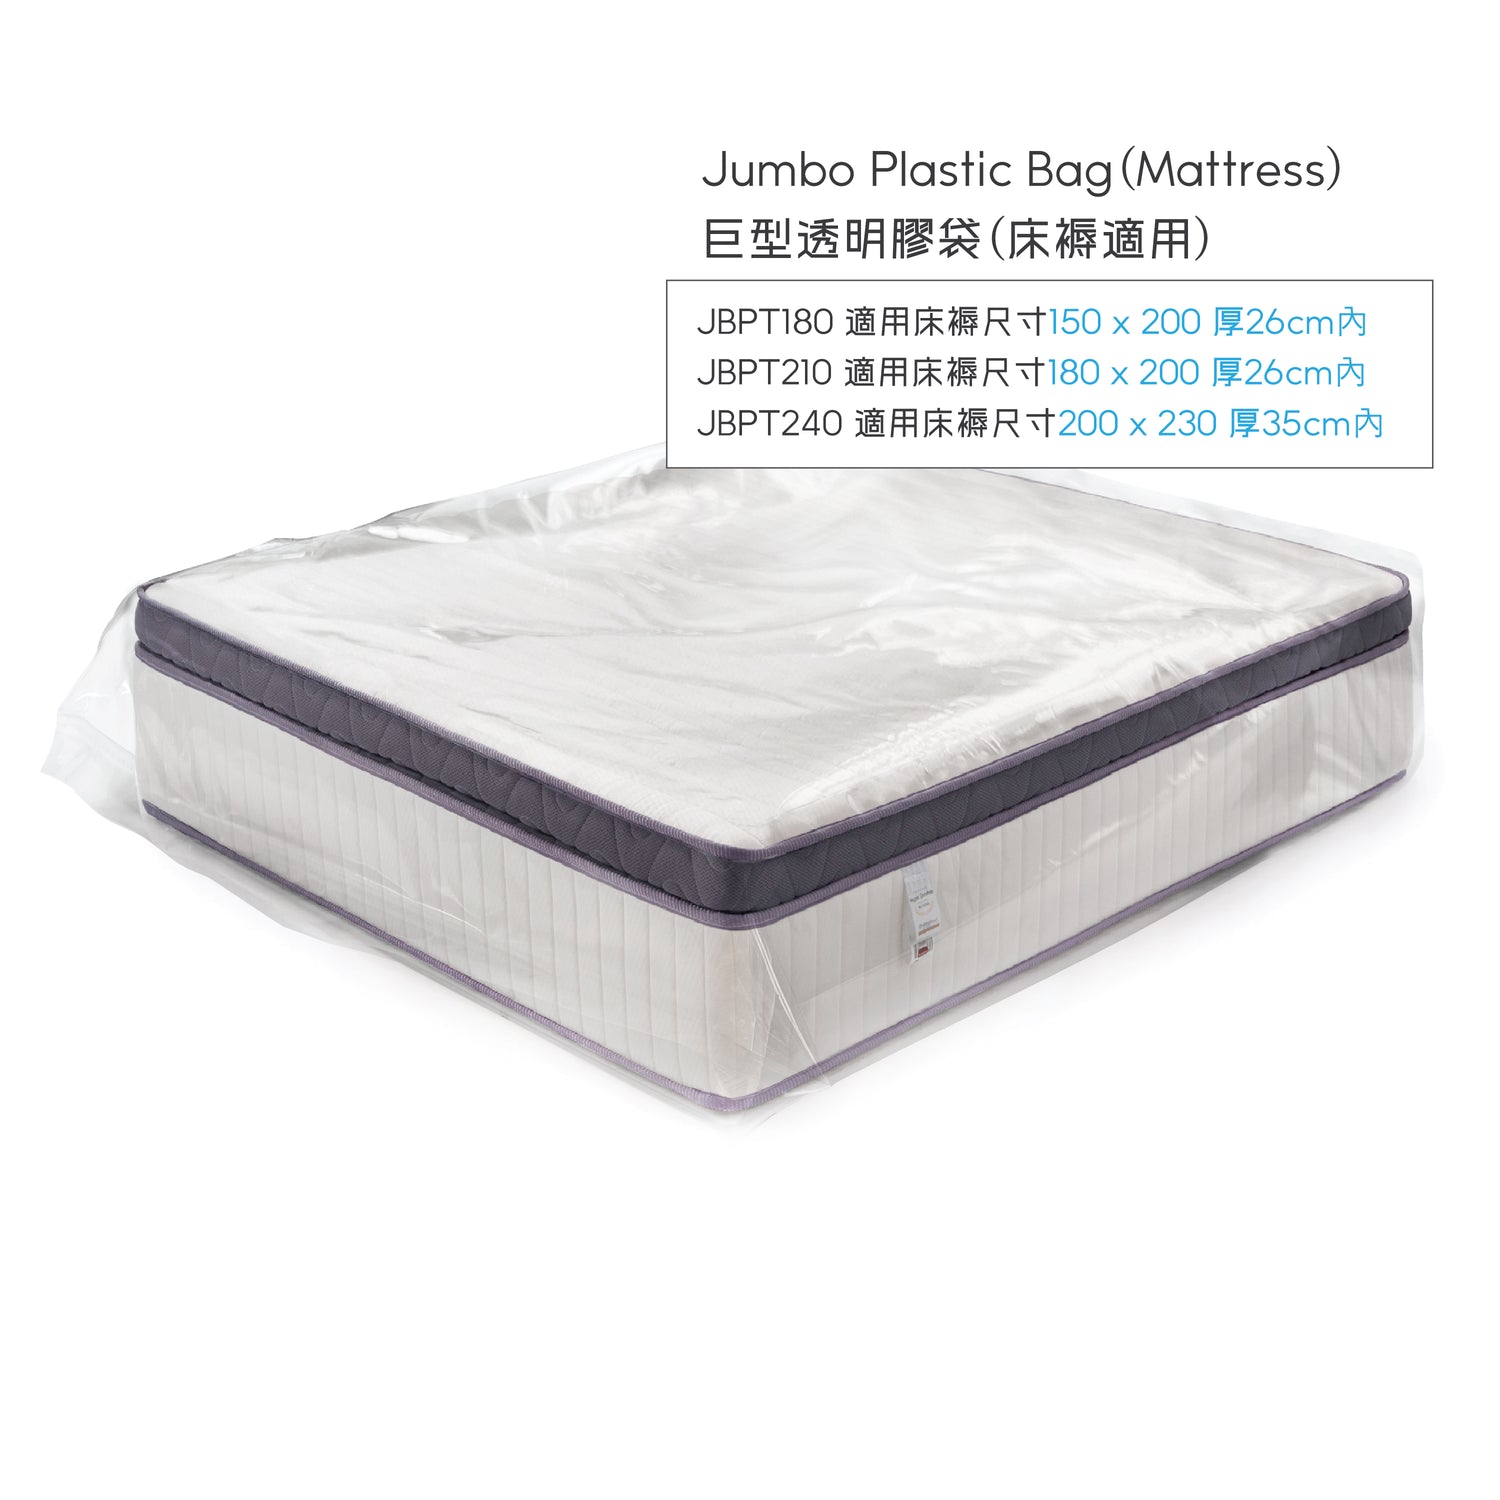 Jumbo Plastic Bag(Mattress) 巨型透明膠袋(床褥適用)